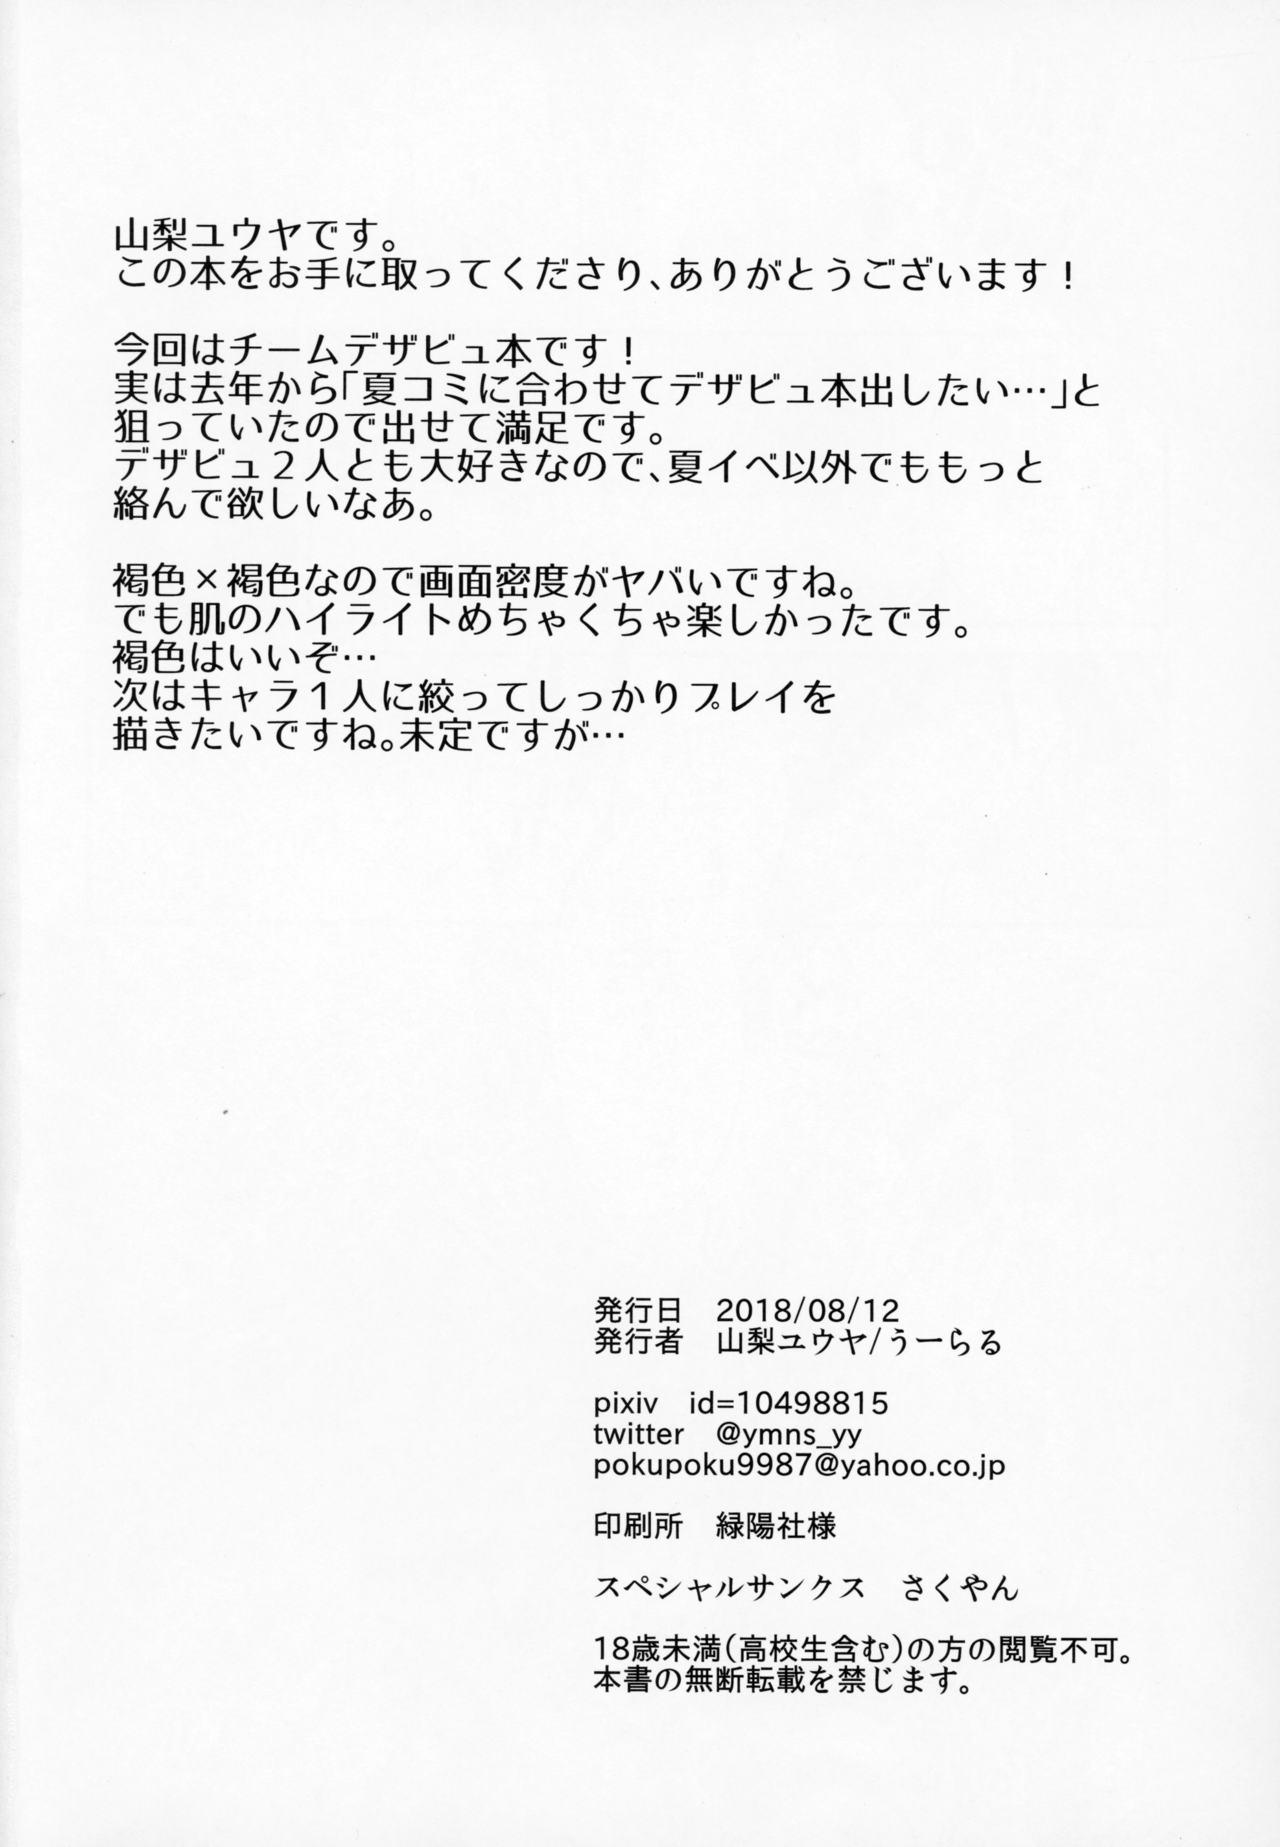 Full Movie DeseBeau-shiki Inkei Shuukai QP Atsume - Fate grand order Korea - Page 29